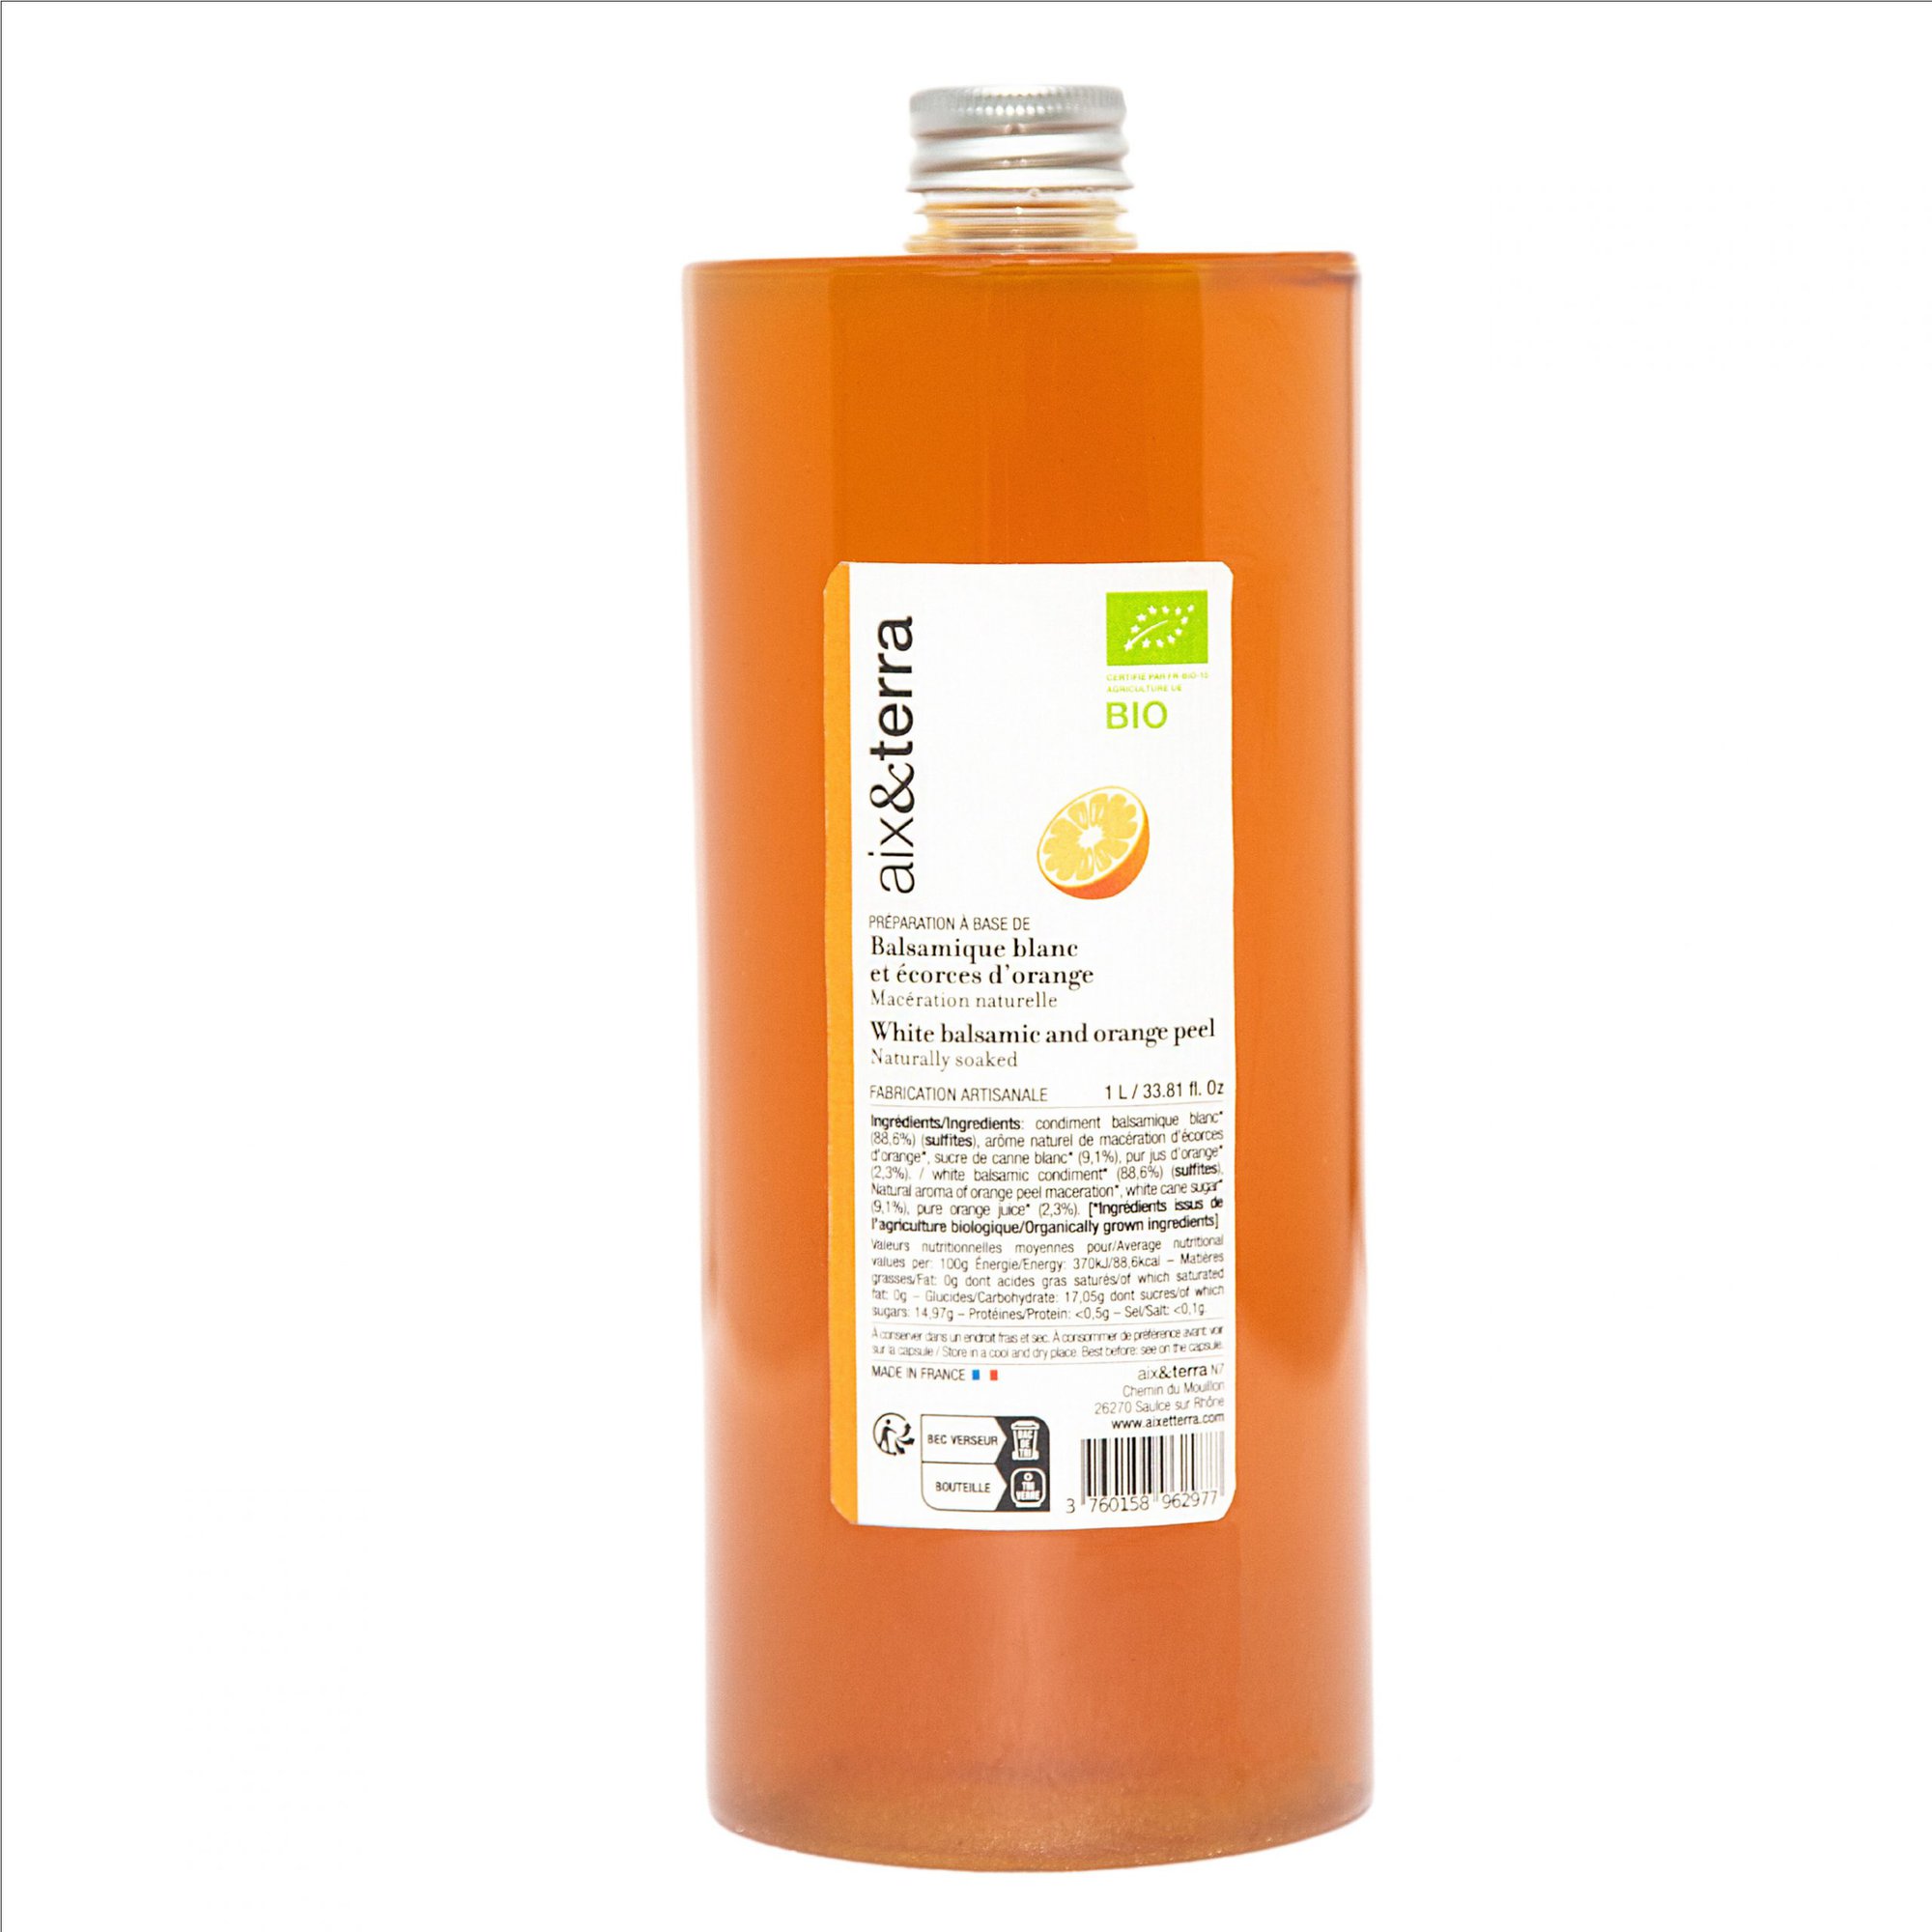 Balsamique blanc et écorces d'orange BIO 1L (Préparation à base de) -  Aix&Terra